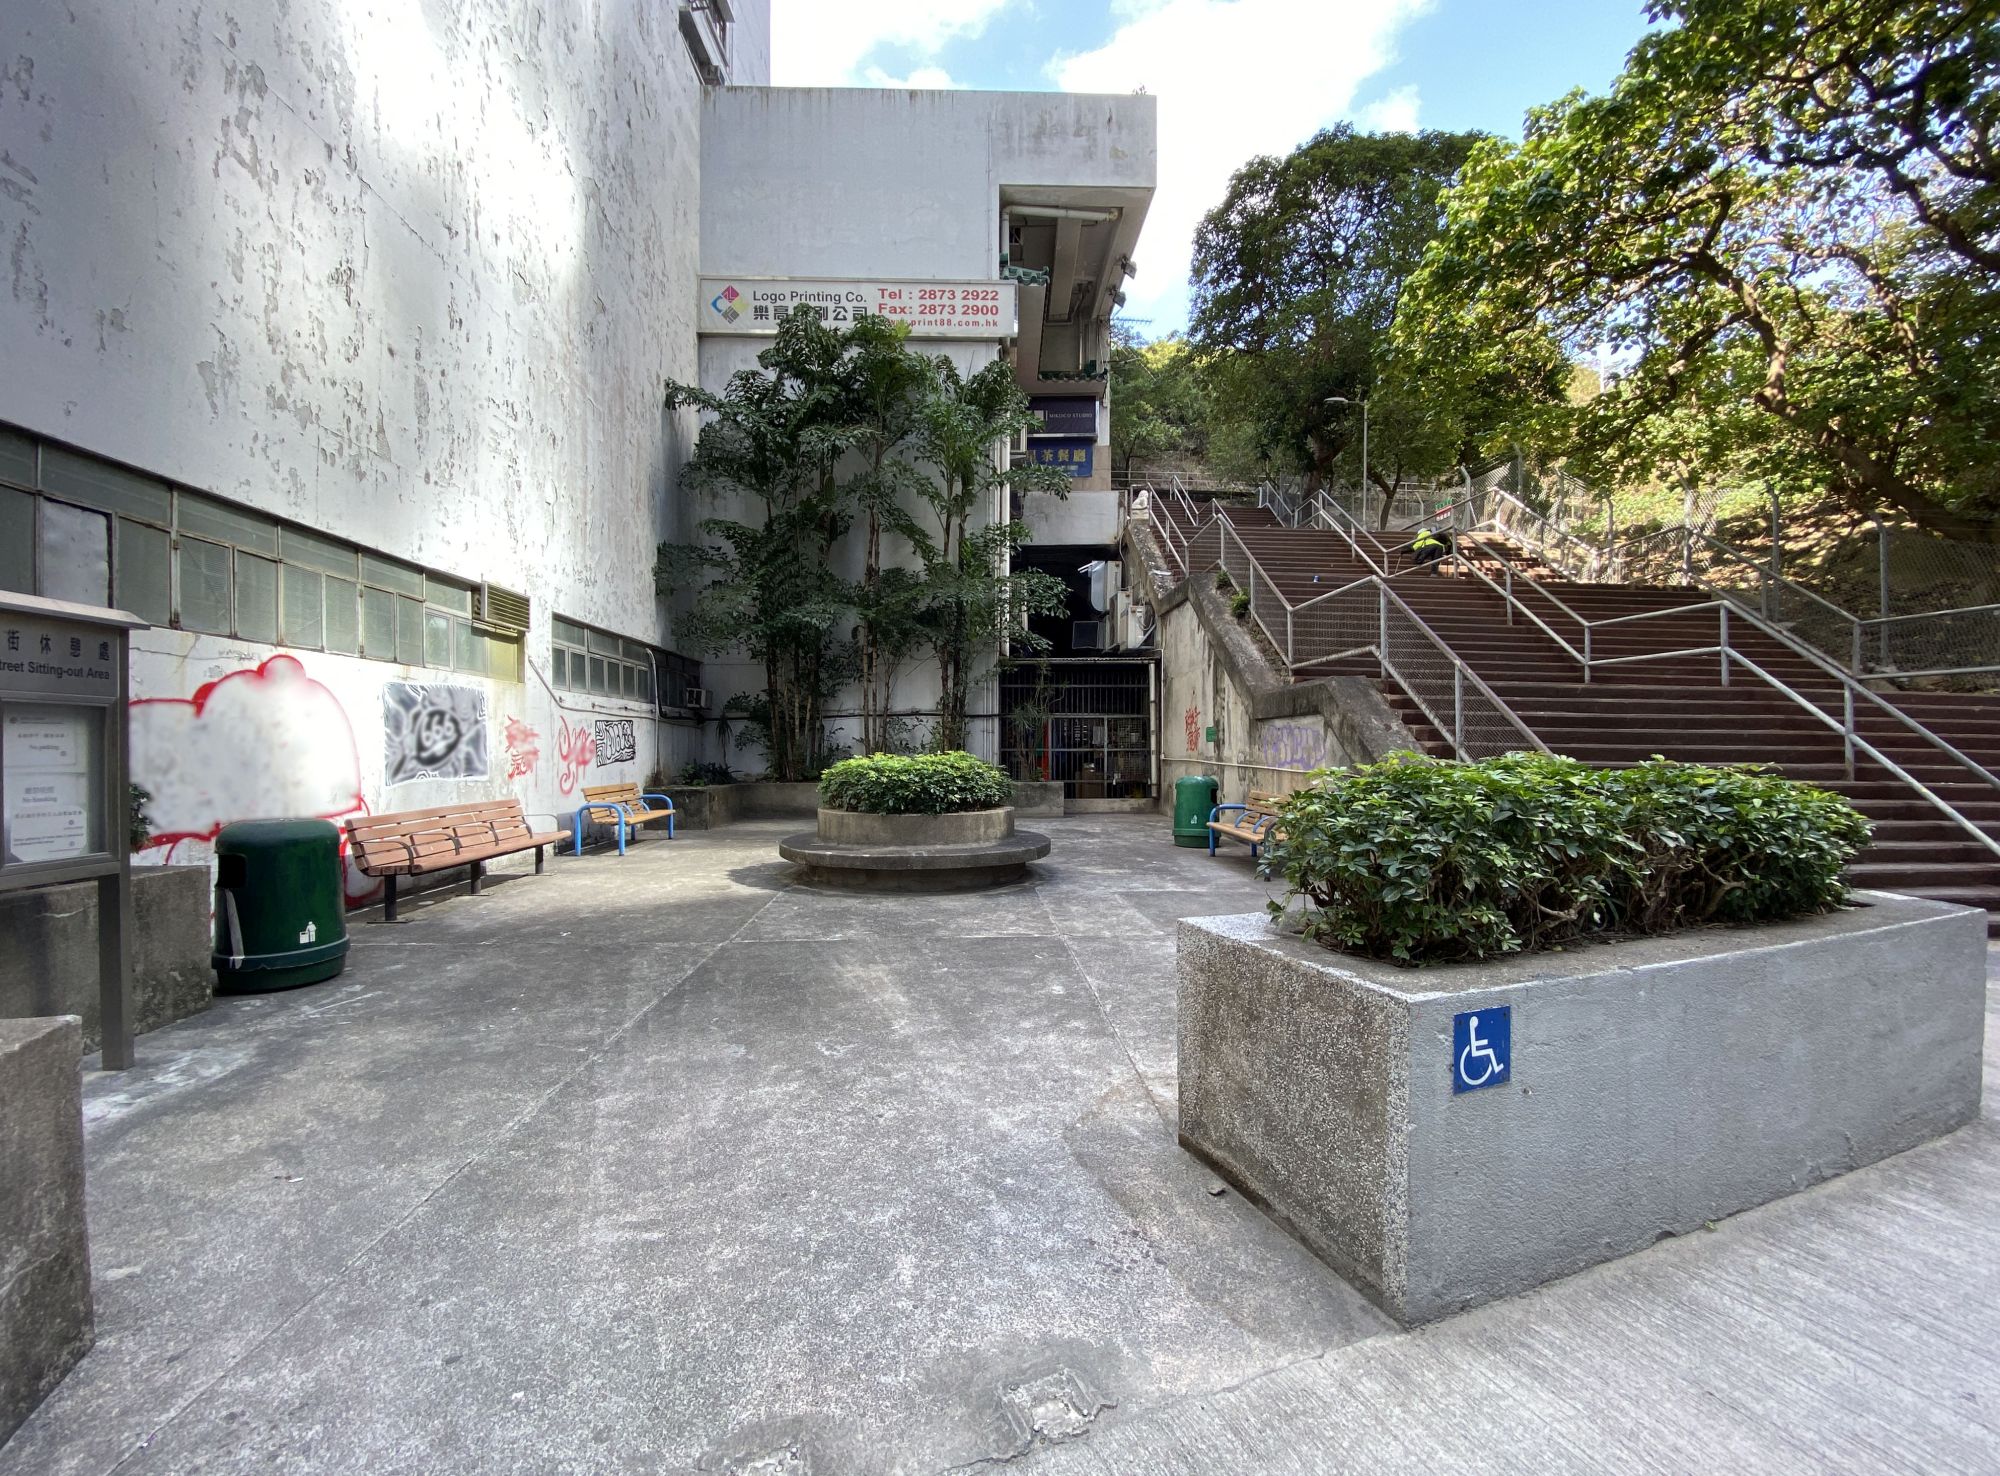 业勤街休憩处和附近的阶梯、后巷及斜坡，也是「黄竹坑绿色联机」项目会改善的地方。